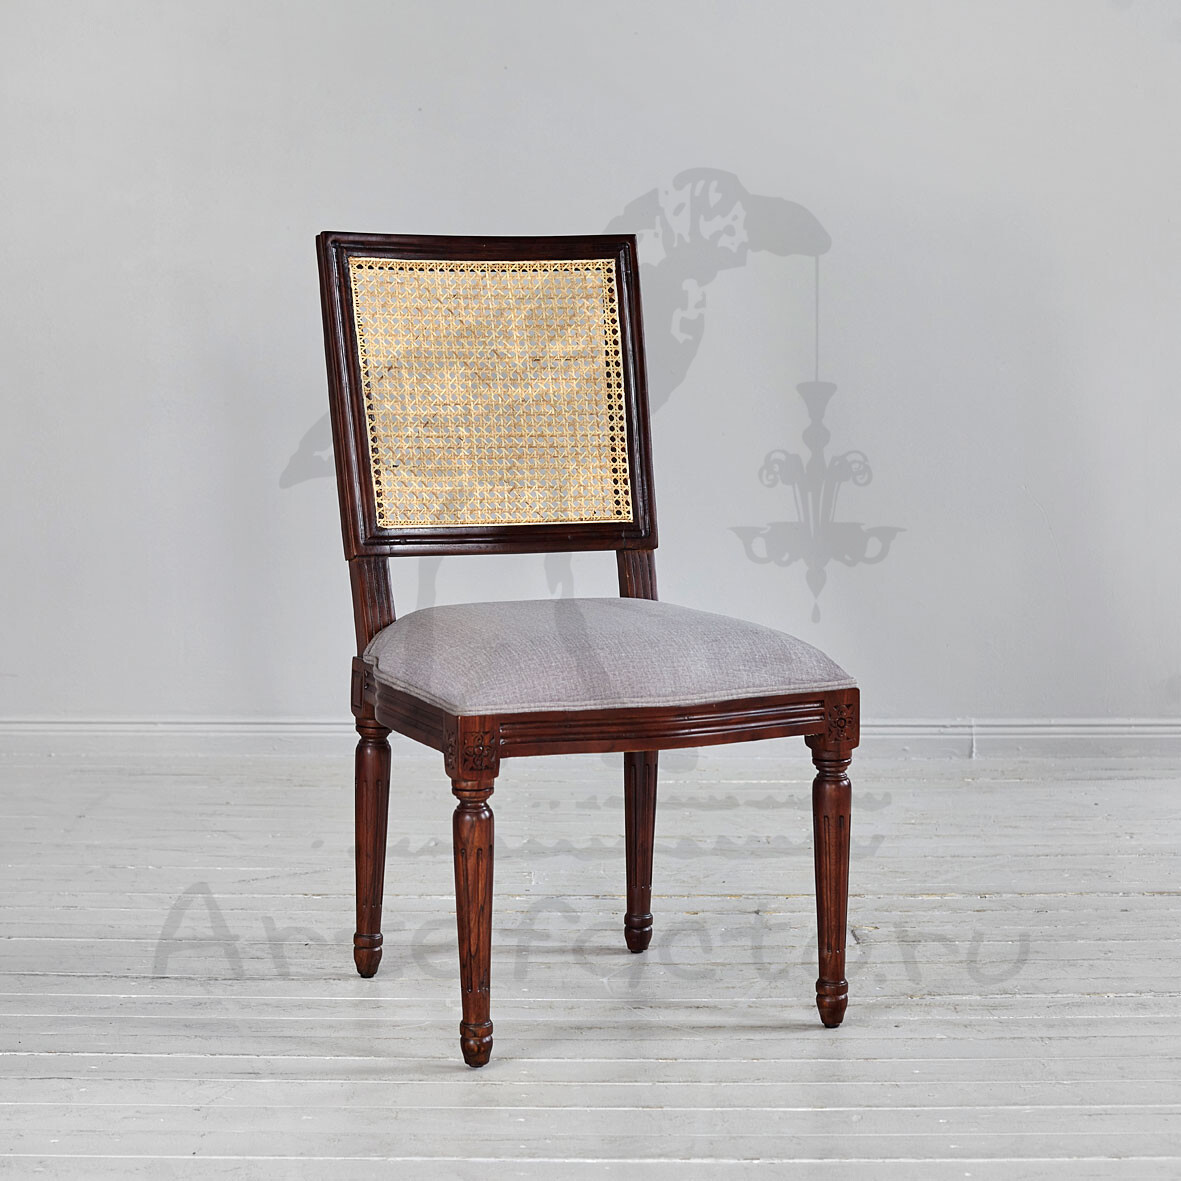 Деревянный стул с высокой плетеной спинкой